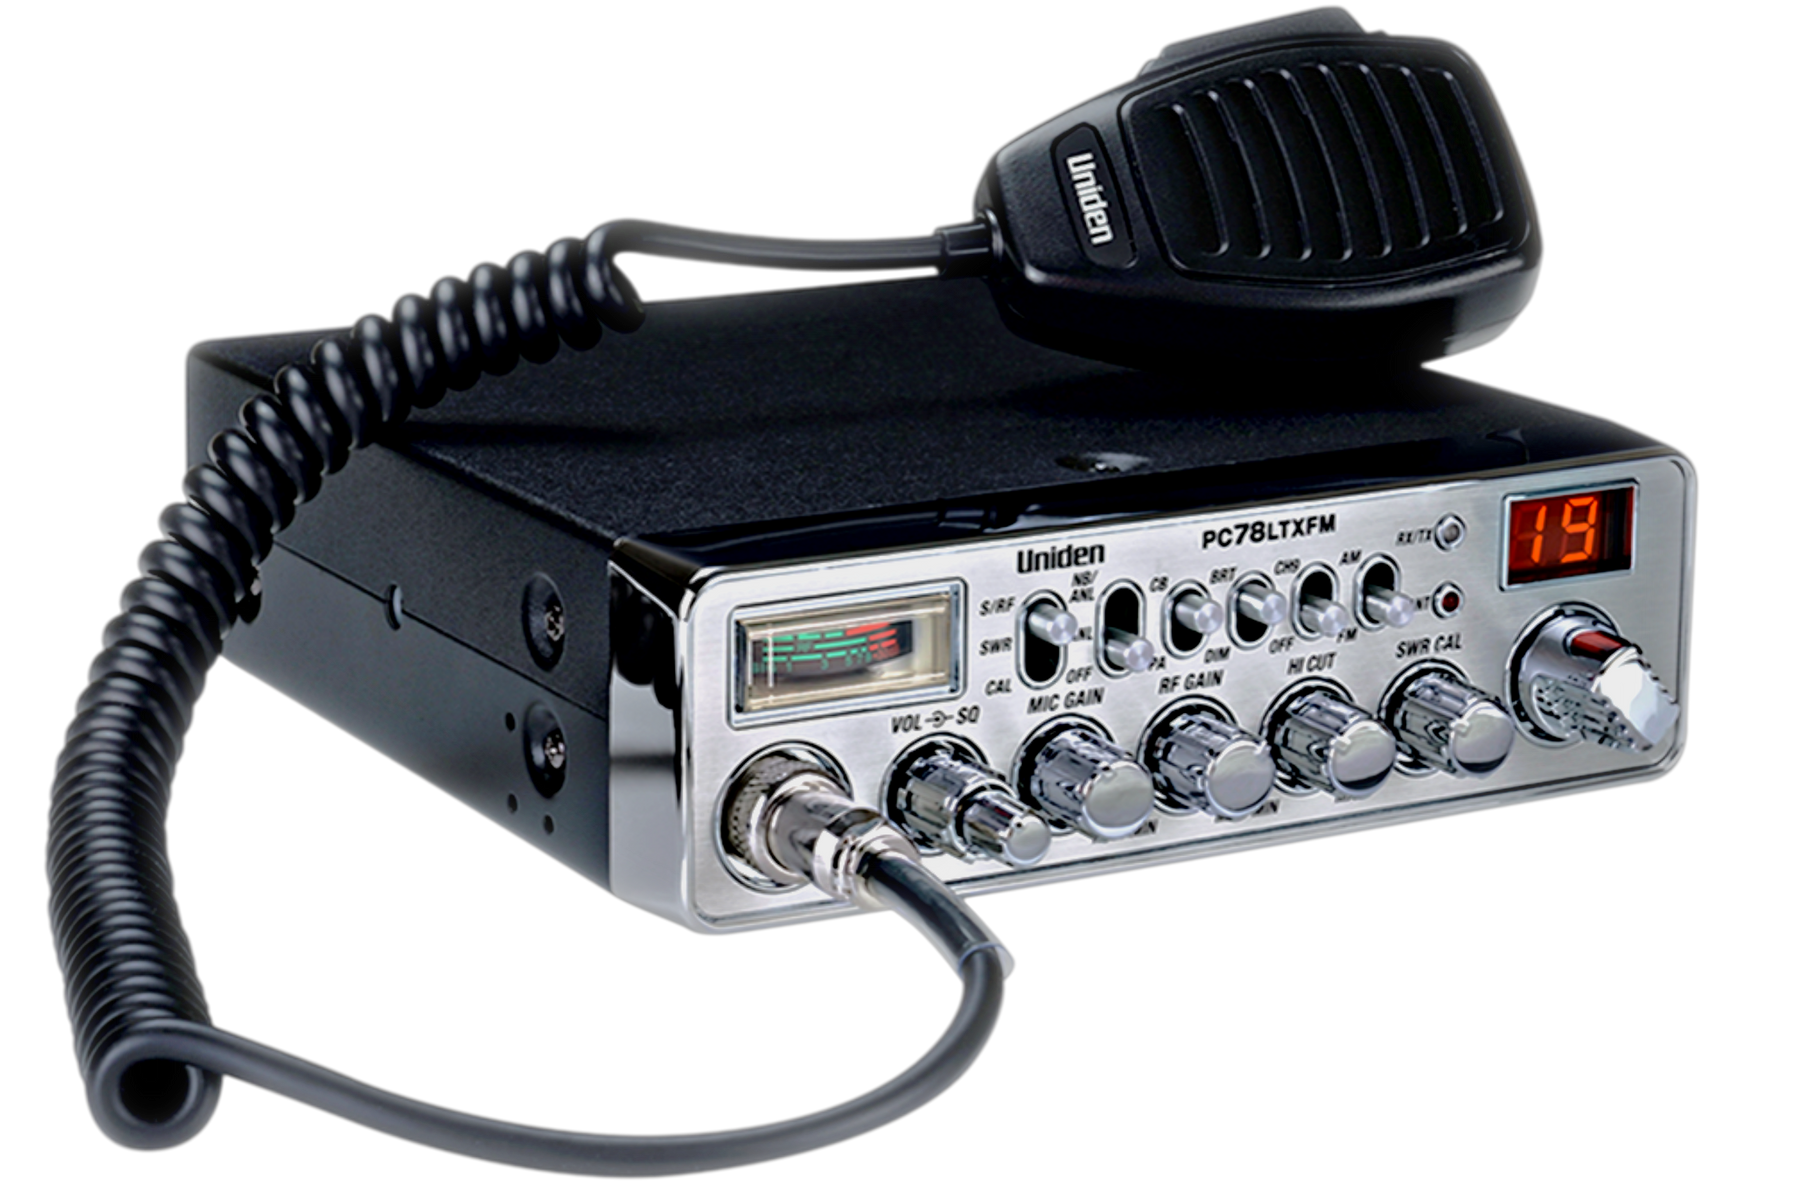 PC78LTXFM CB Radio — Uniden America Corporation